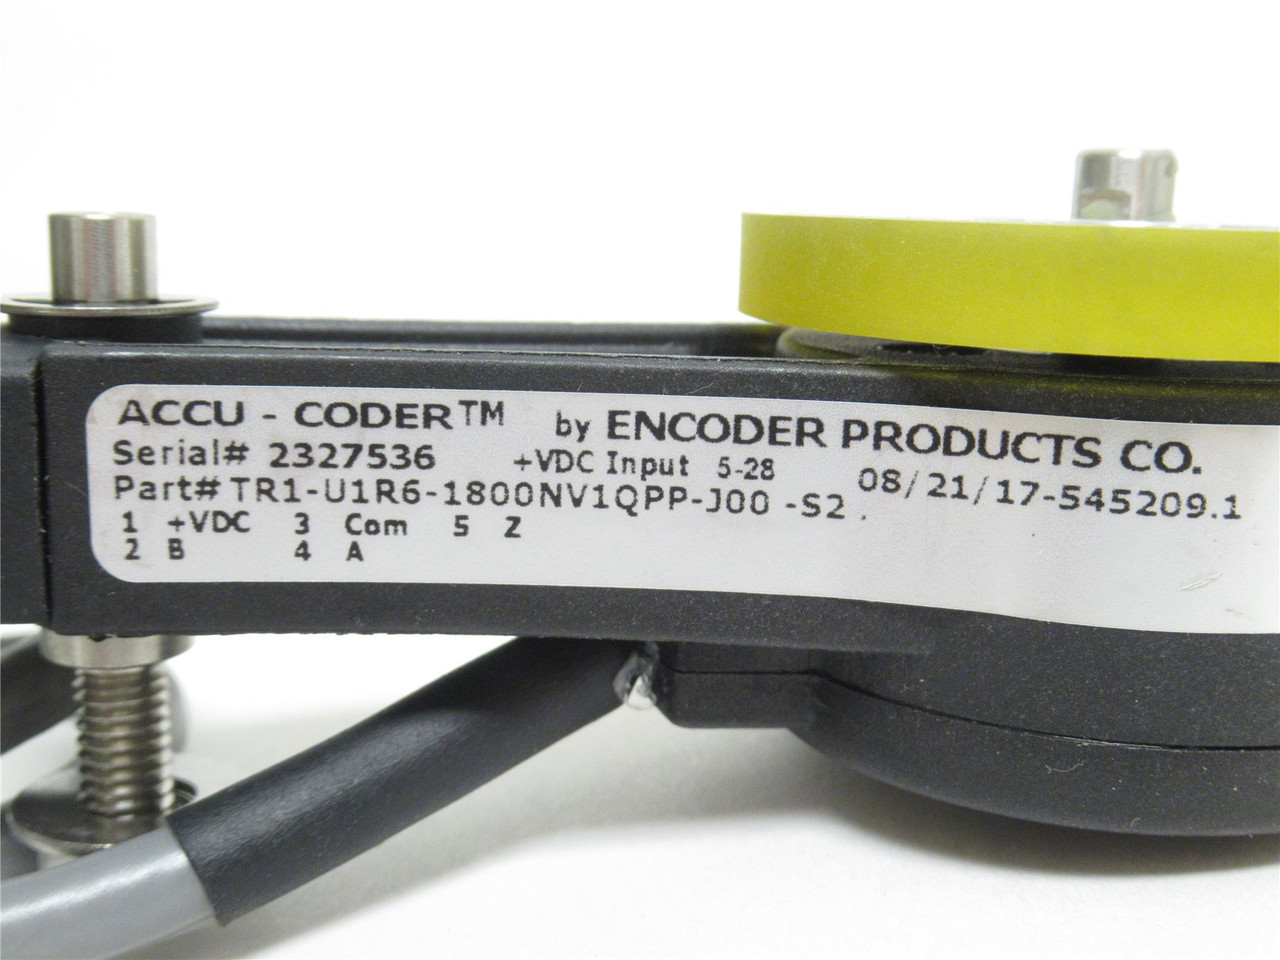 Accu-Coder TR1-U1R6-1800NV1QPP-J00-S2; Encoder 5-28VDC